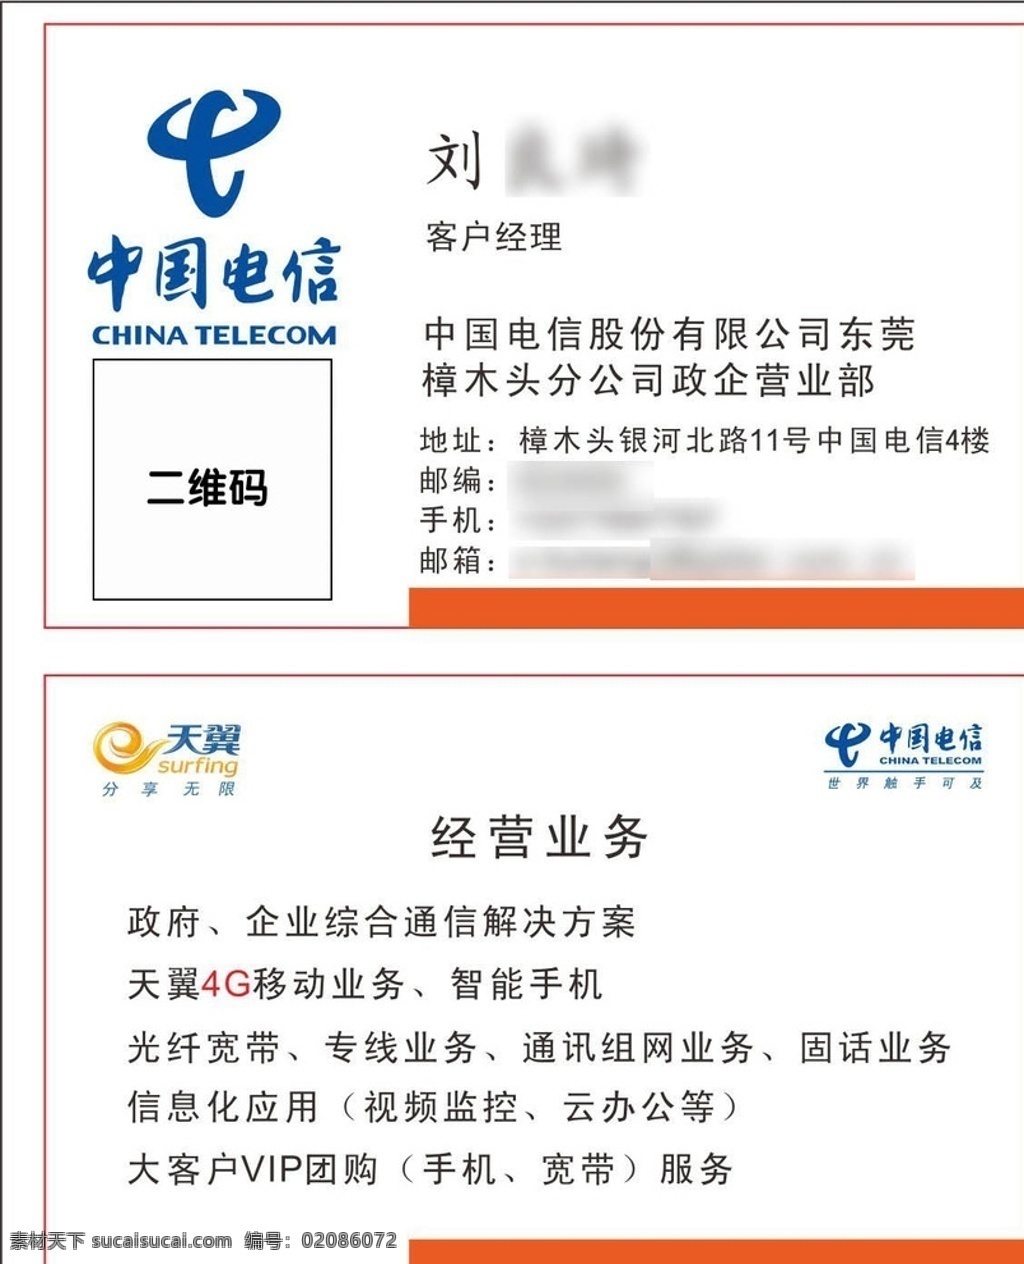 中国电信名片 中国电信天翼 中国电信广告 中国电信单页 中国电信展板 名片 名片卡片